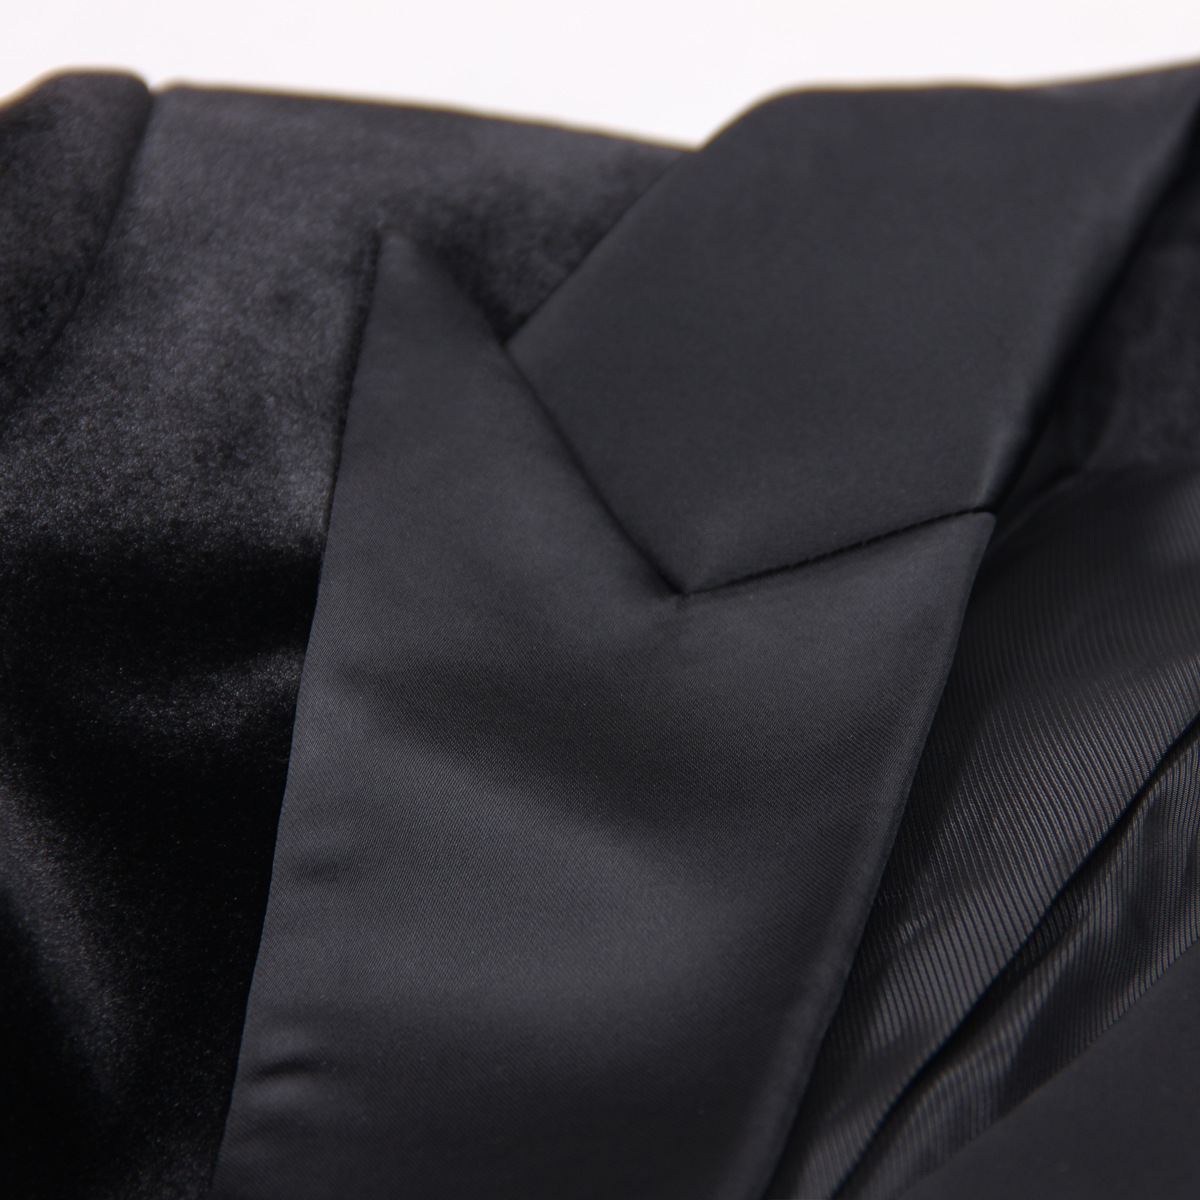 Velvet Feather Plus Size Suit Manufacturer (4)